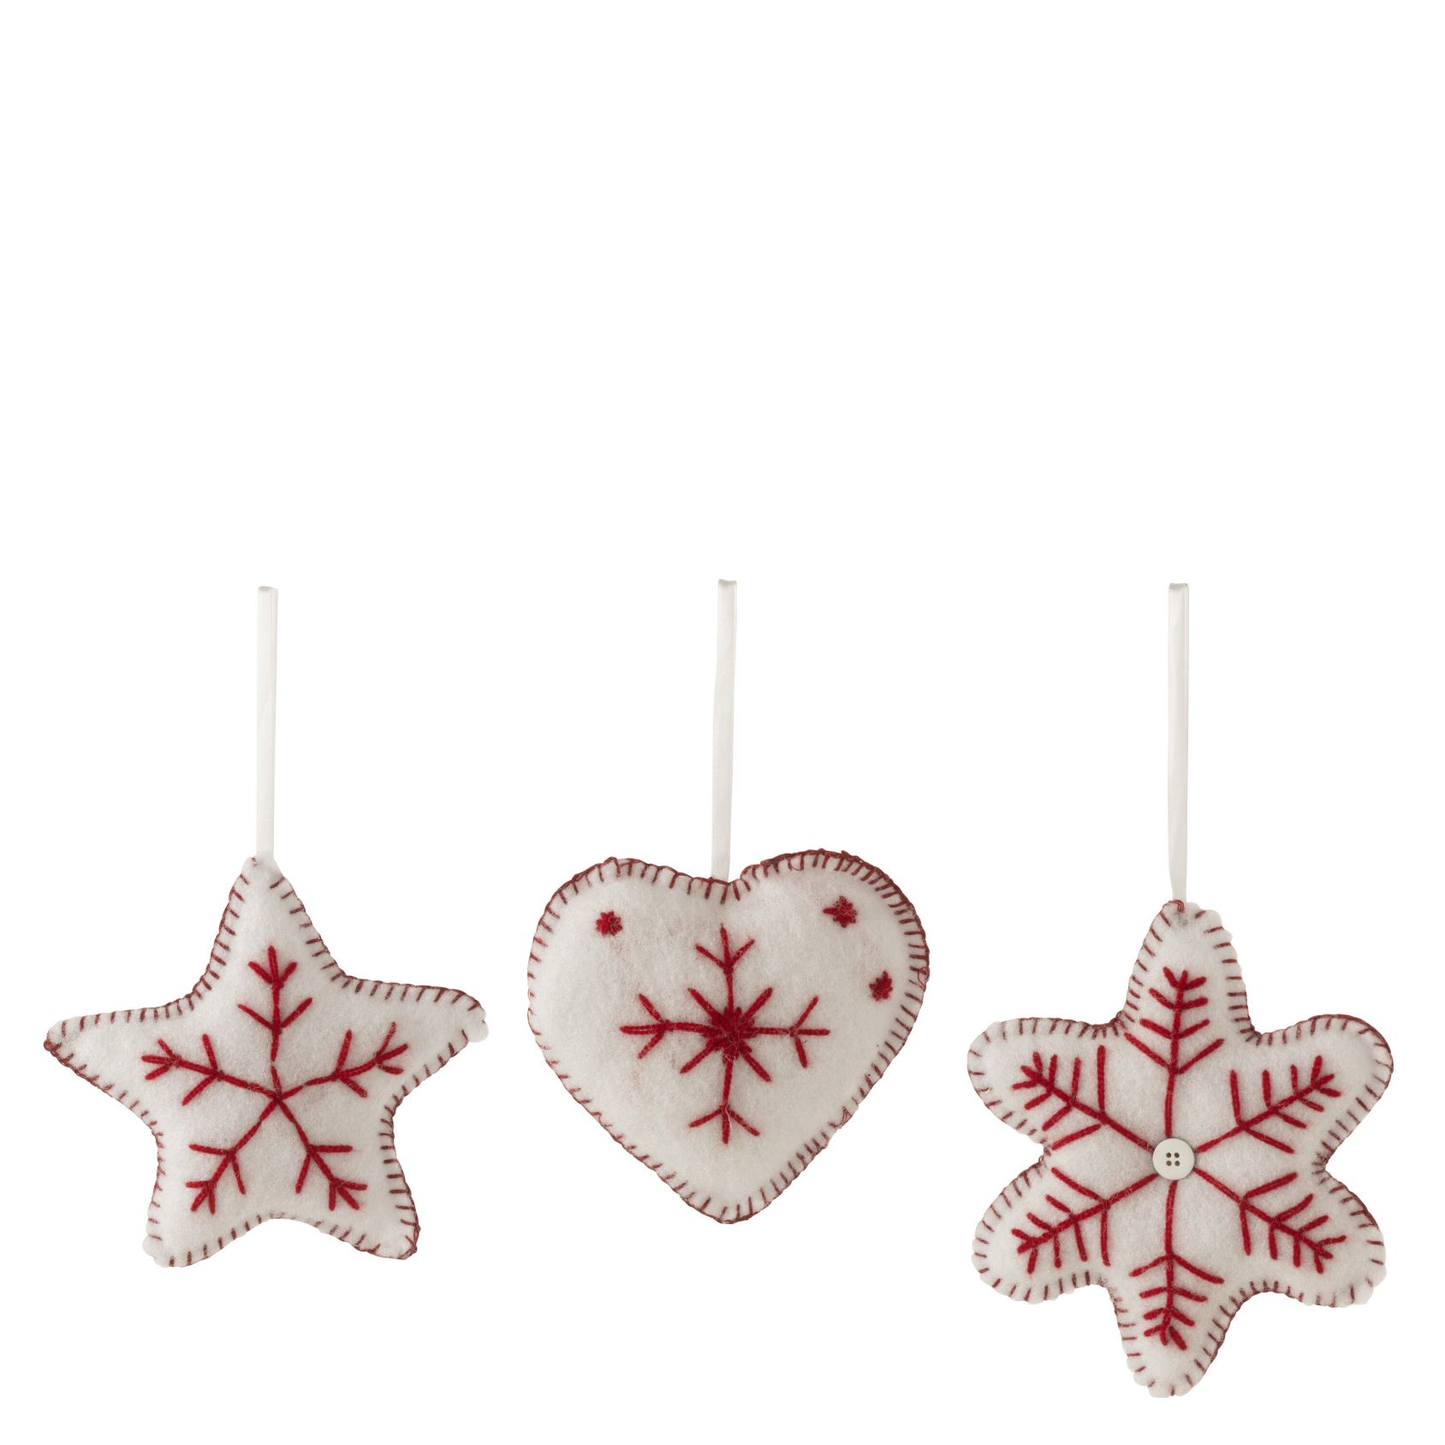 Hangers Uit Katoen Hart/Ster/Snoepje/Kerstboom Assortiment (12 stuks)